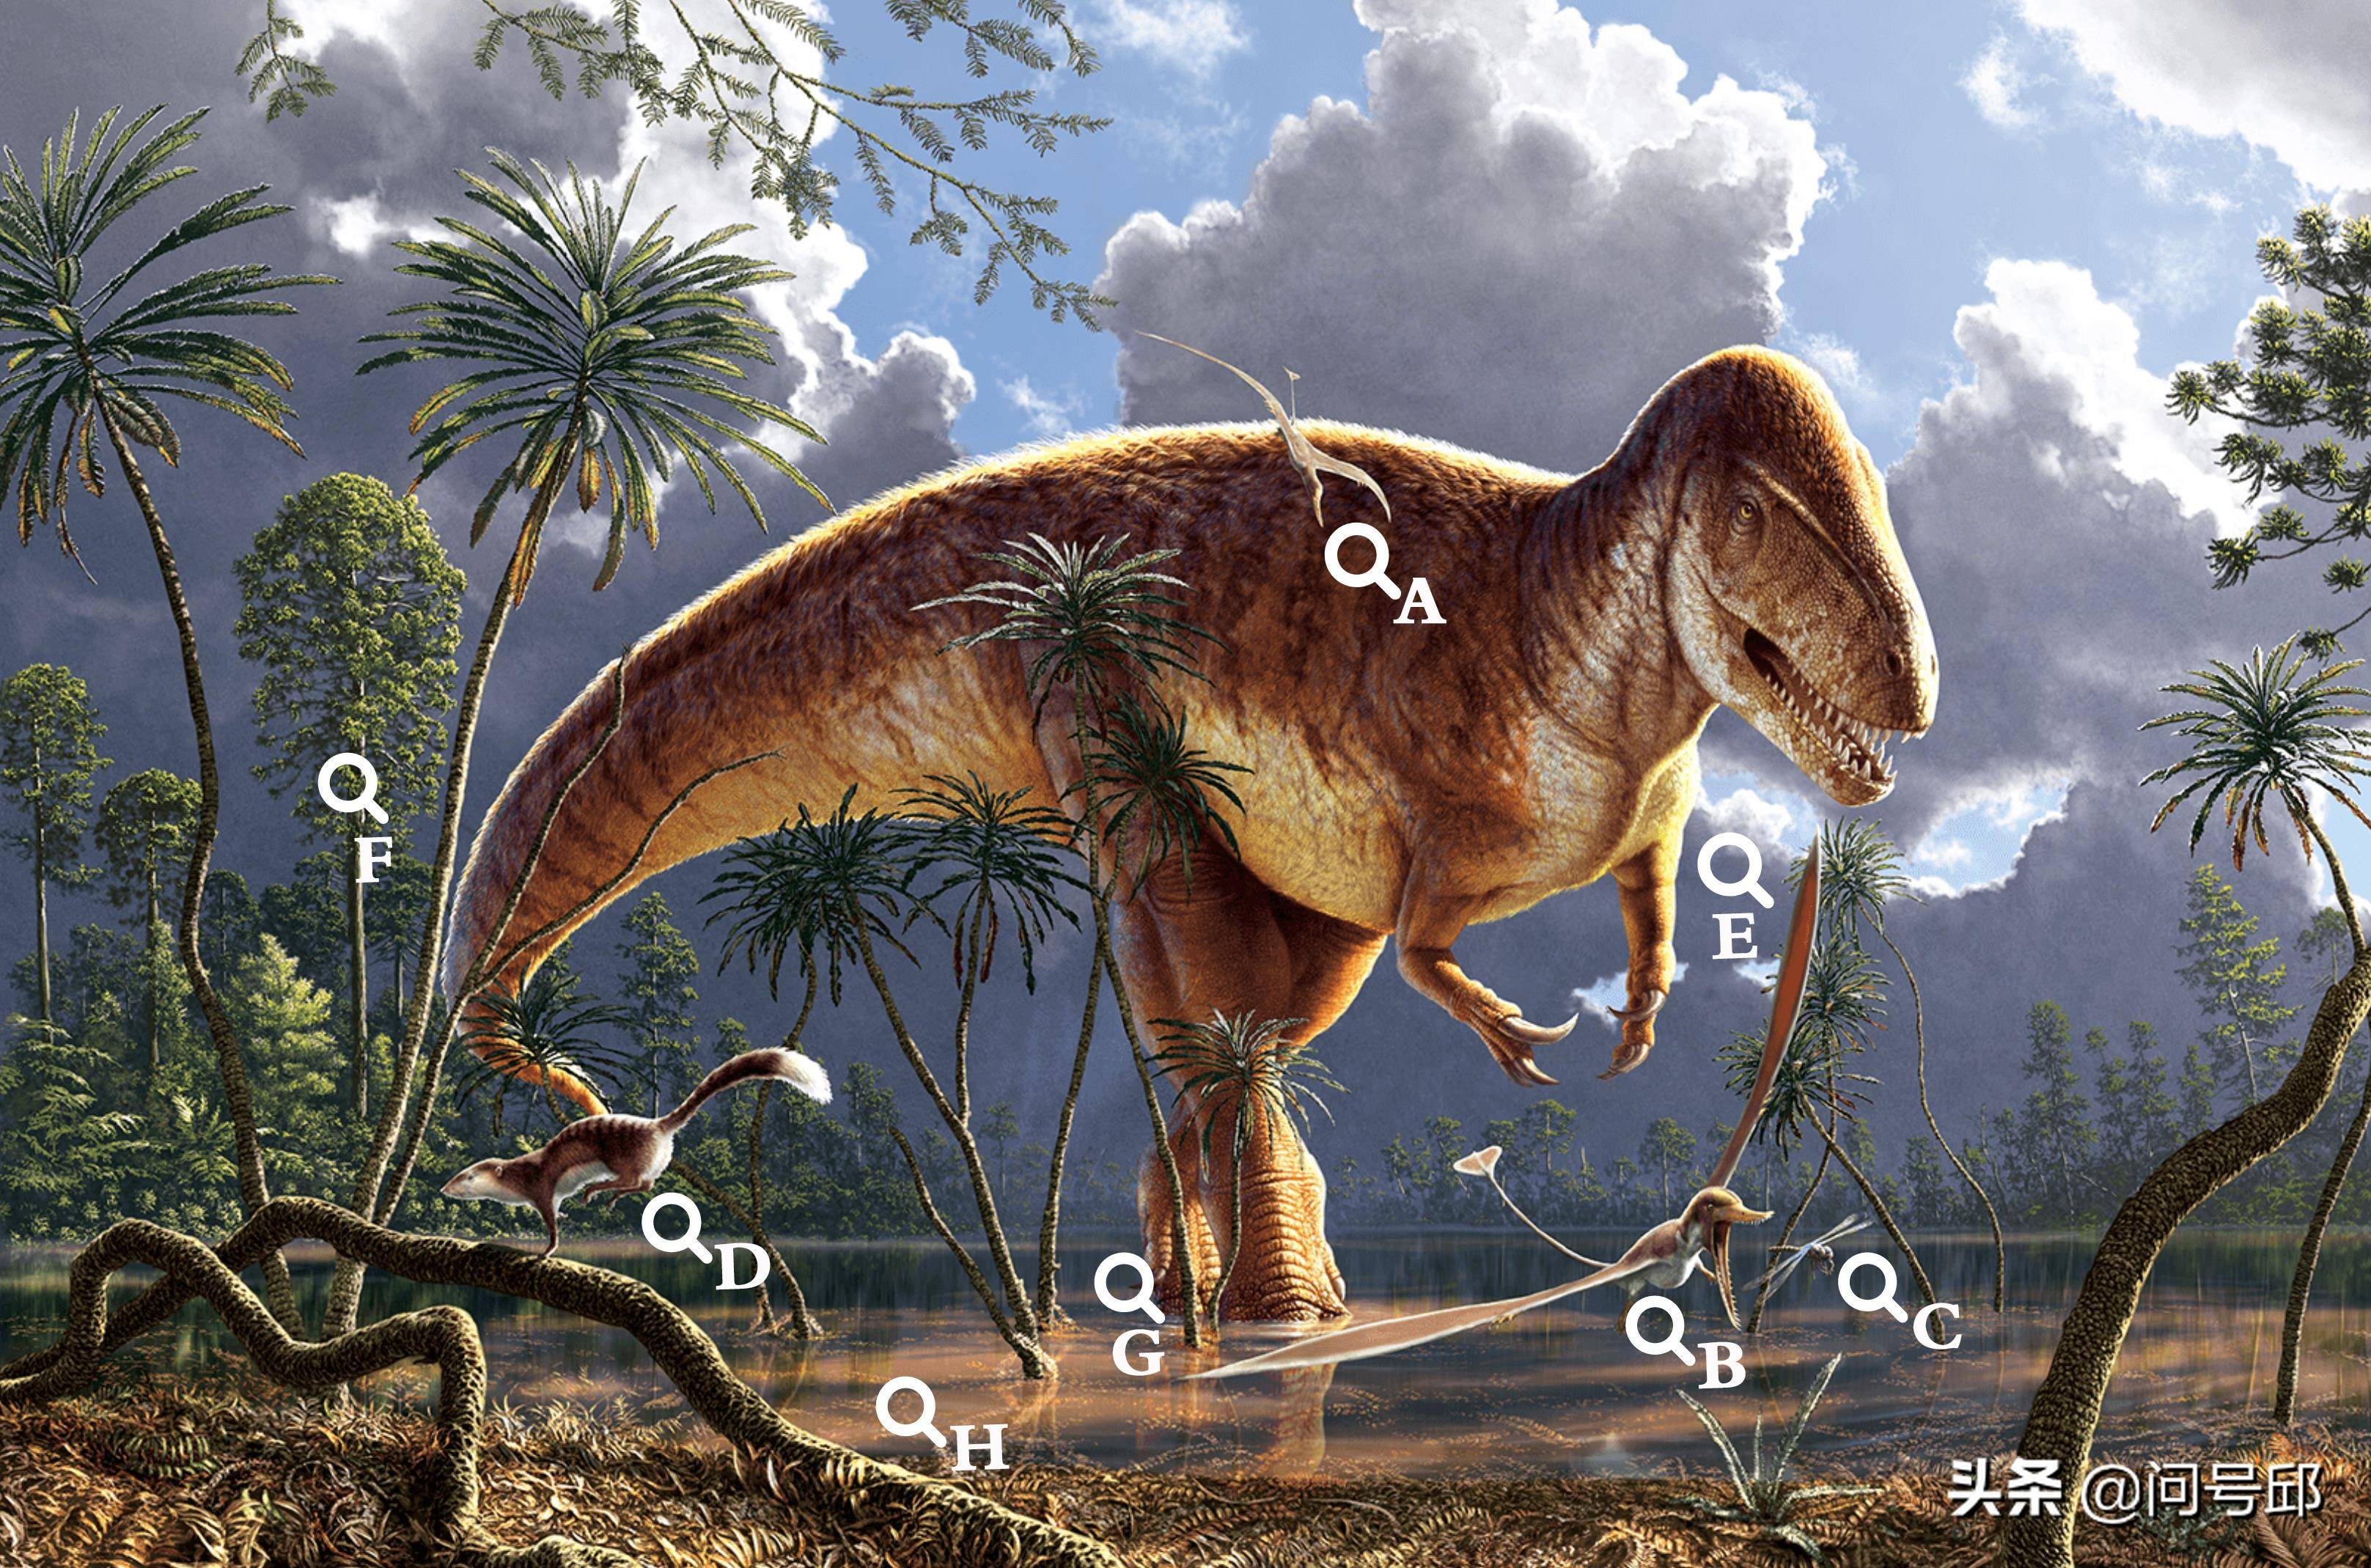 原创从一张侏罗纪恐龙的插图中探索当年地球的多样物种和生态系统